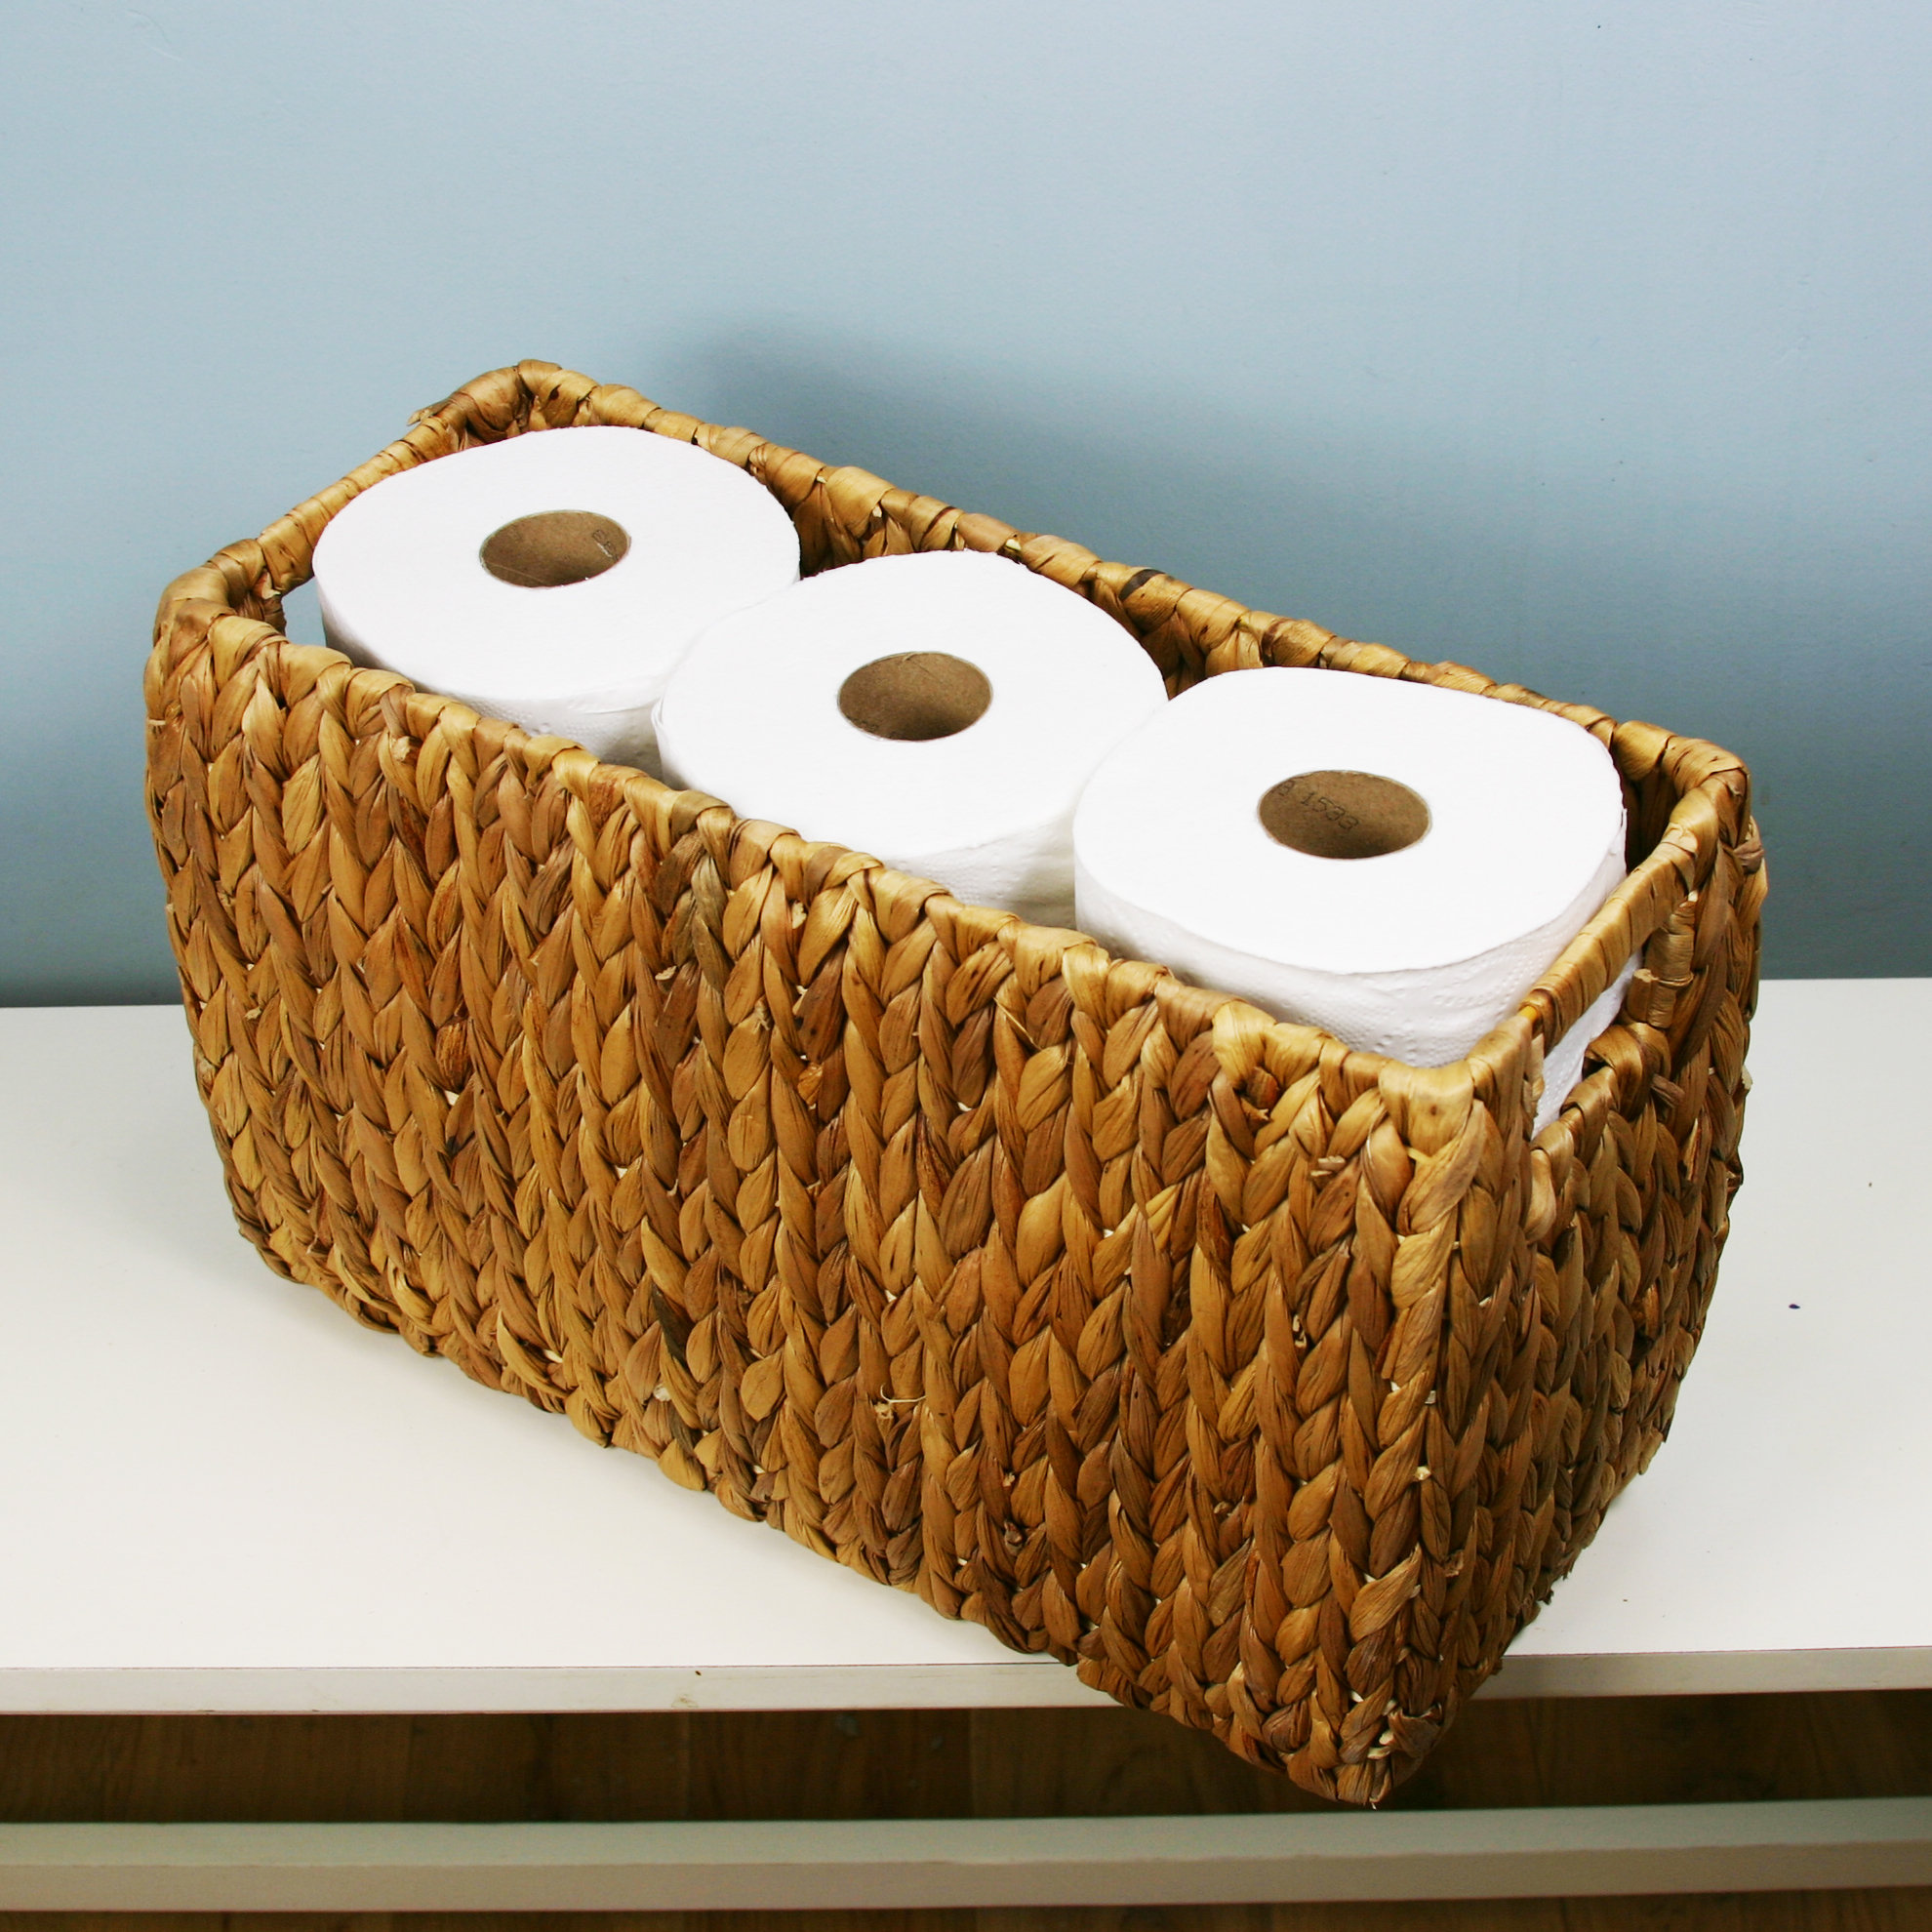 https://assets.wfcdn.com/im/89580046/compr-r85/2260/226086170/aviya-hyacinth-storage-basket-holds-6-rolls-of-toilet-paper.jpg